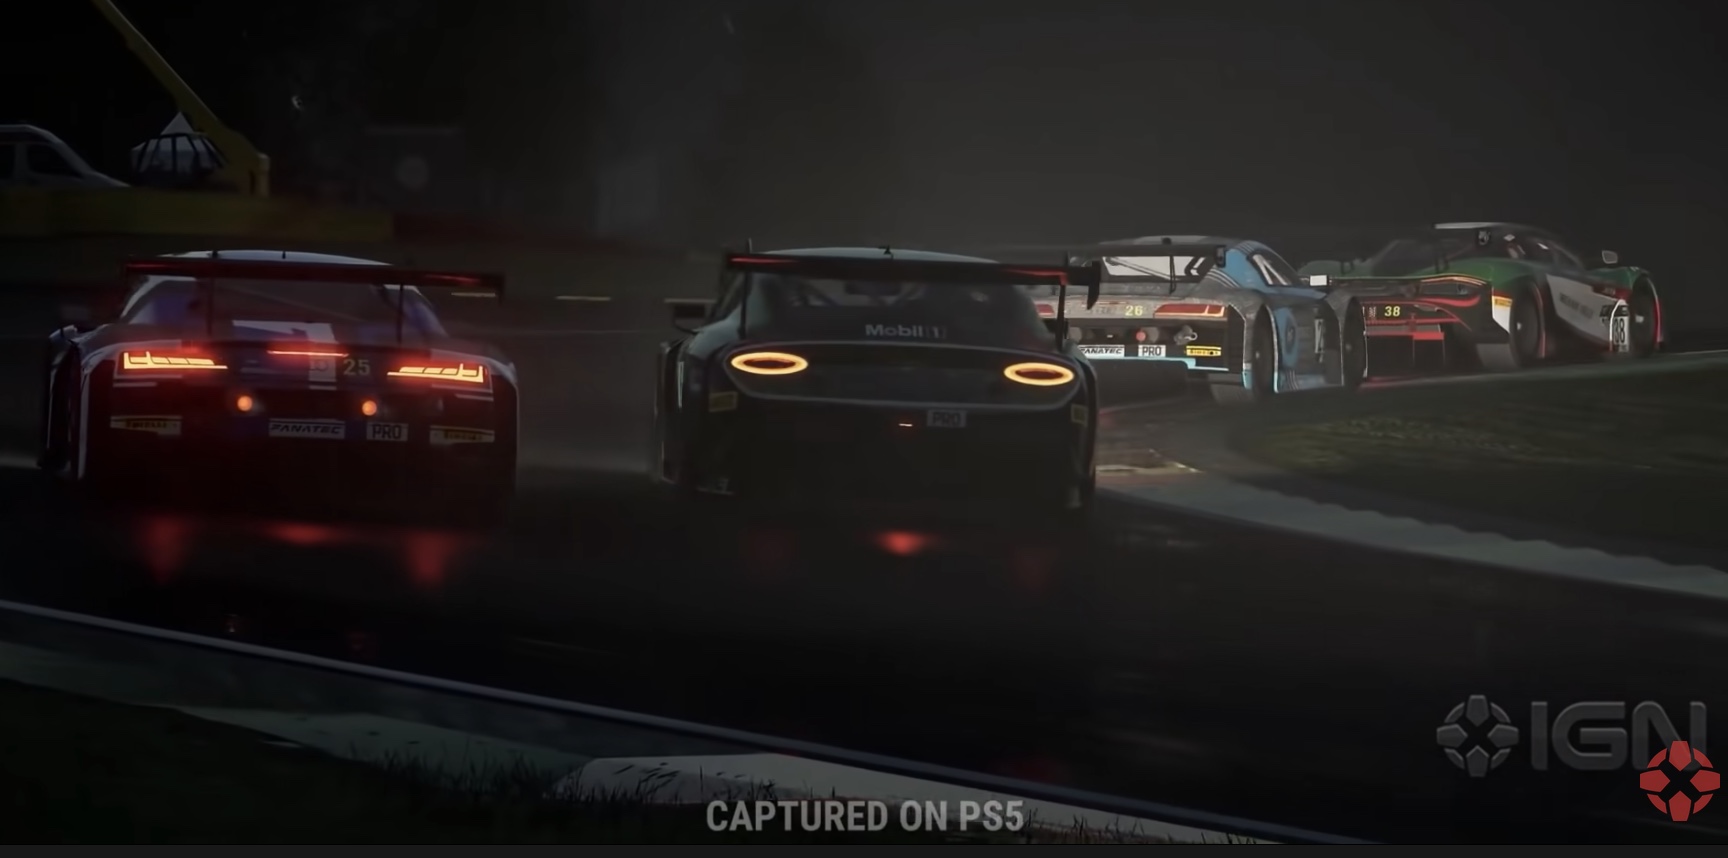 Assetto Corsa Competizione PS5 & Xbox Series X, S Review